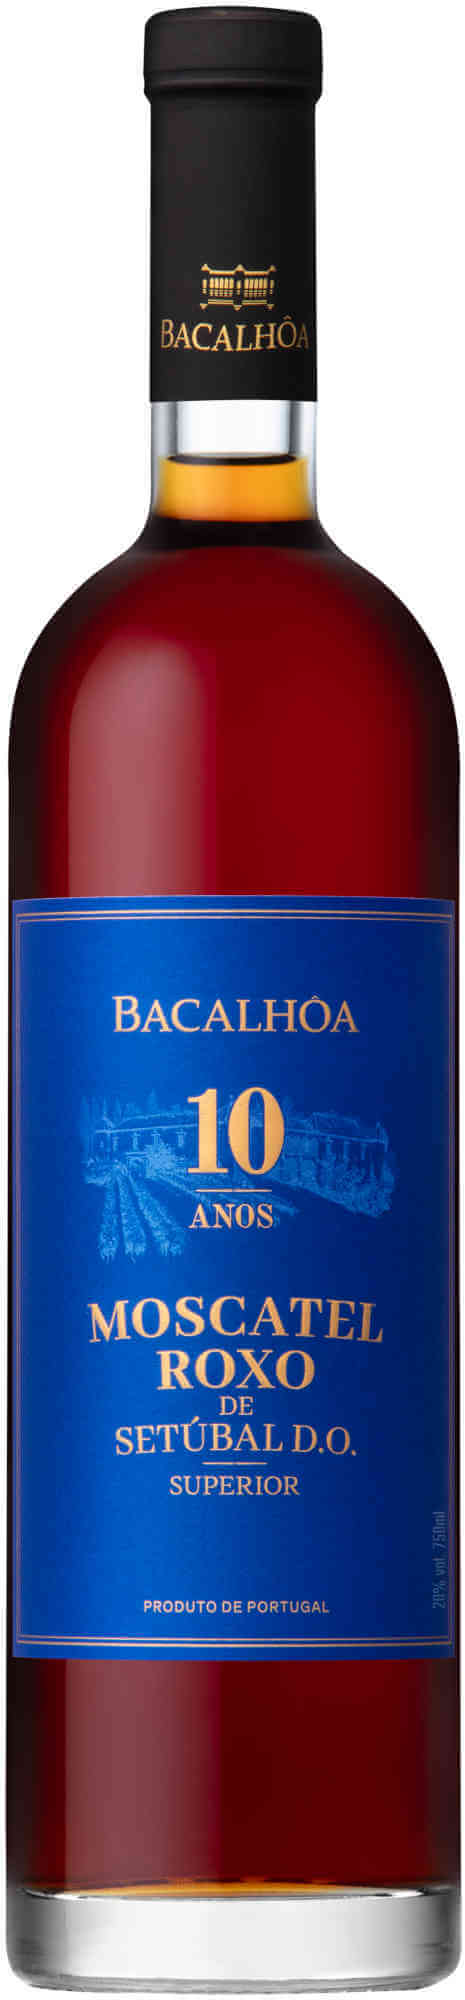 Bacalhoa-Moscatel-de-Setubal-10YO-Roxo